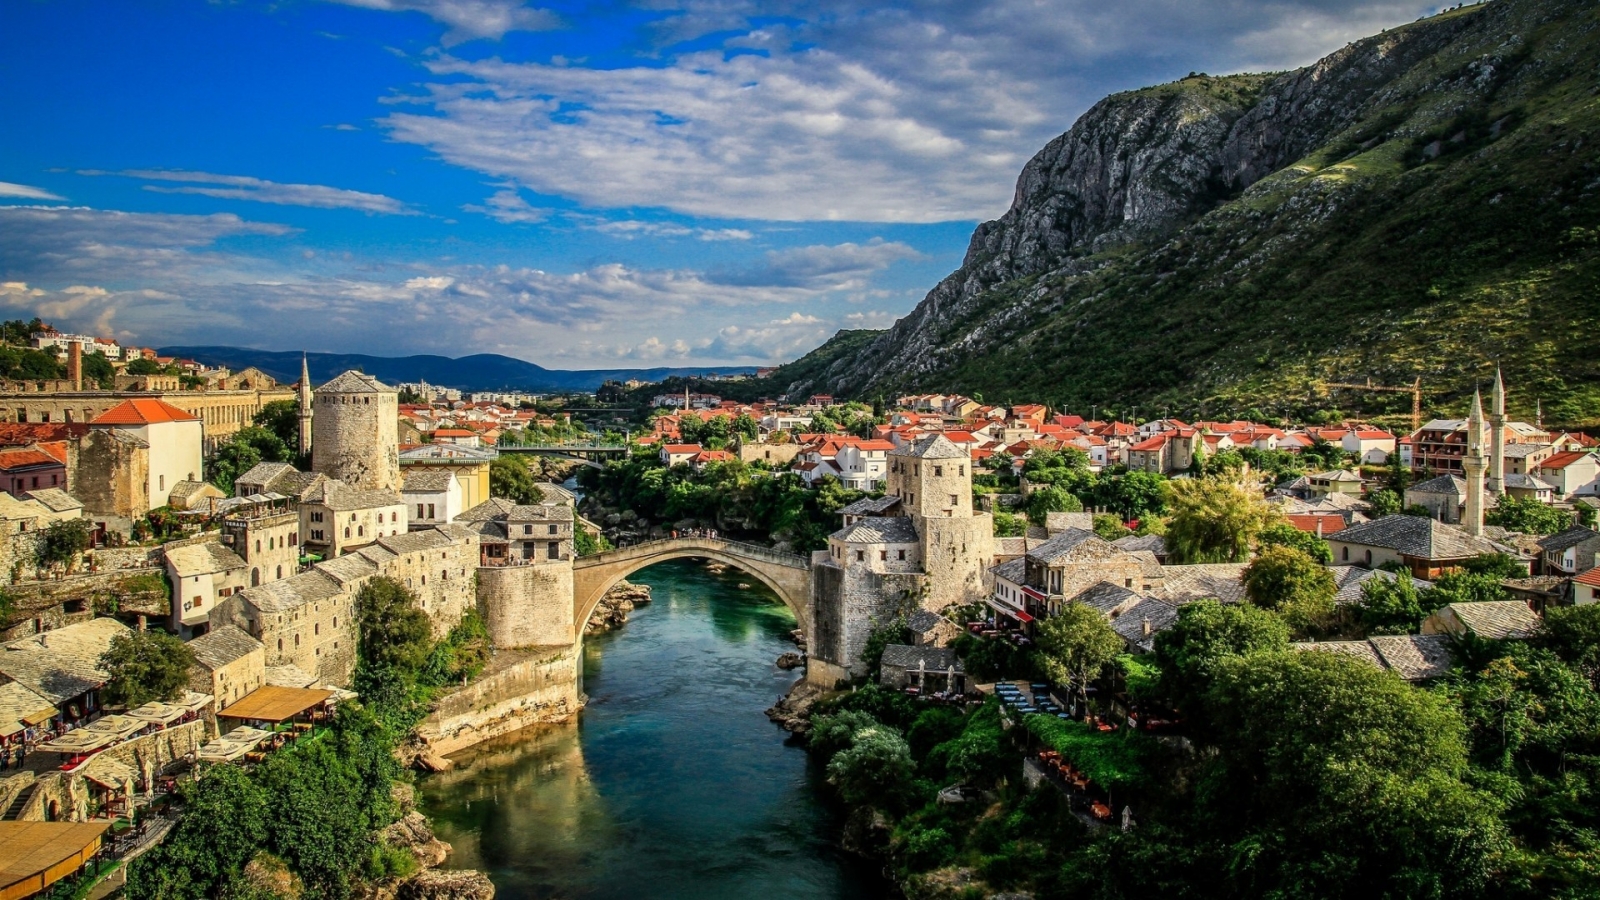 Mostar Bosna i Hercegovina for 1600 x 900 HDTV resolution